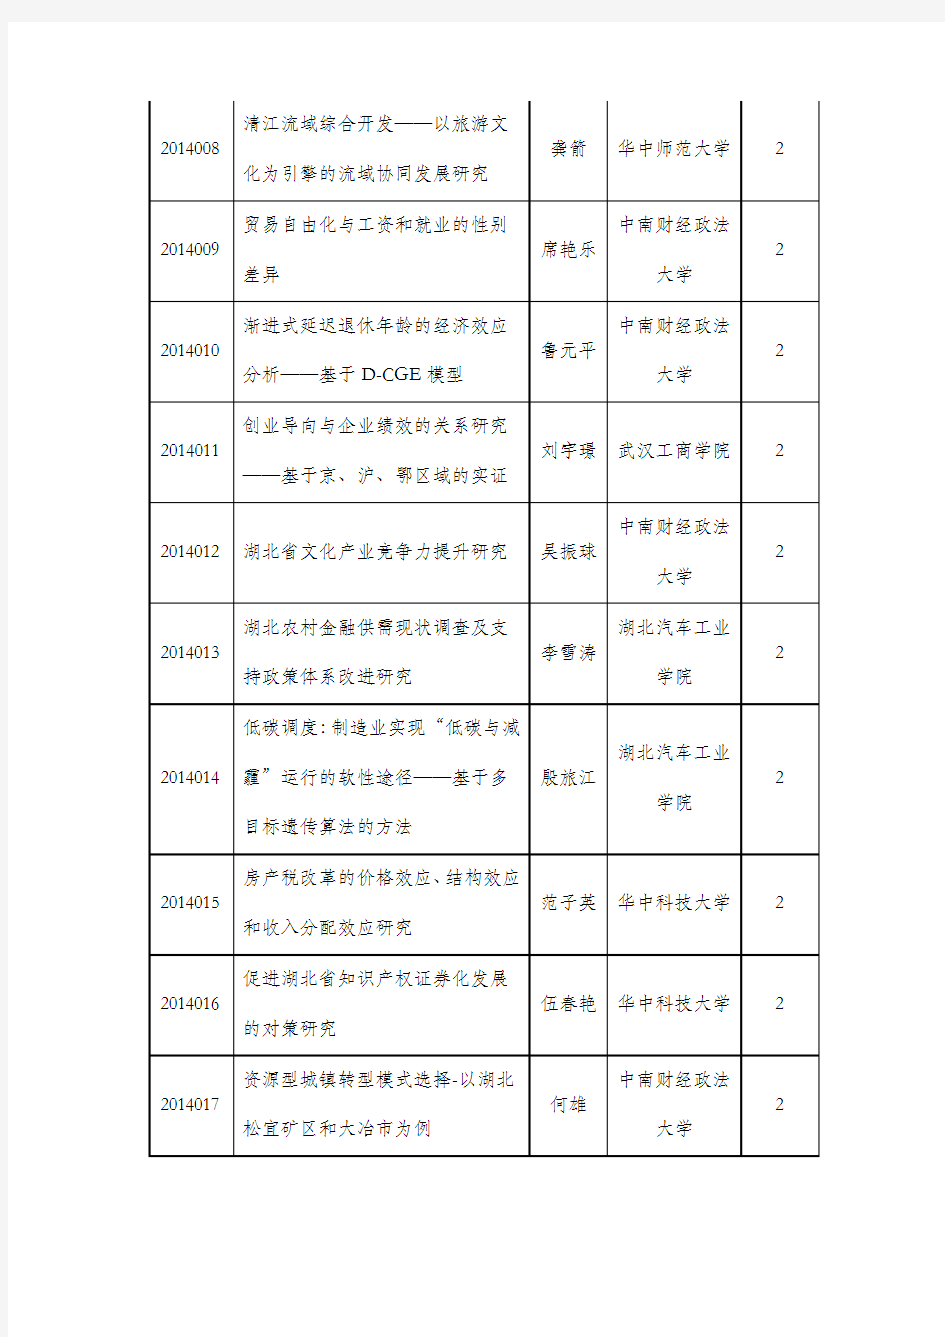 2014年度湖北省社科基金一般项目立项名单公布